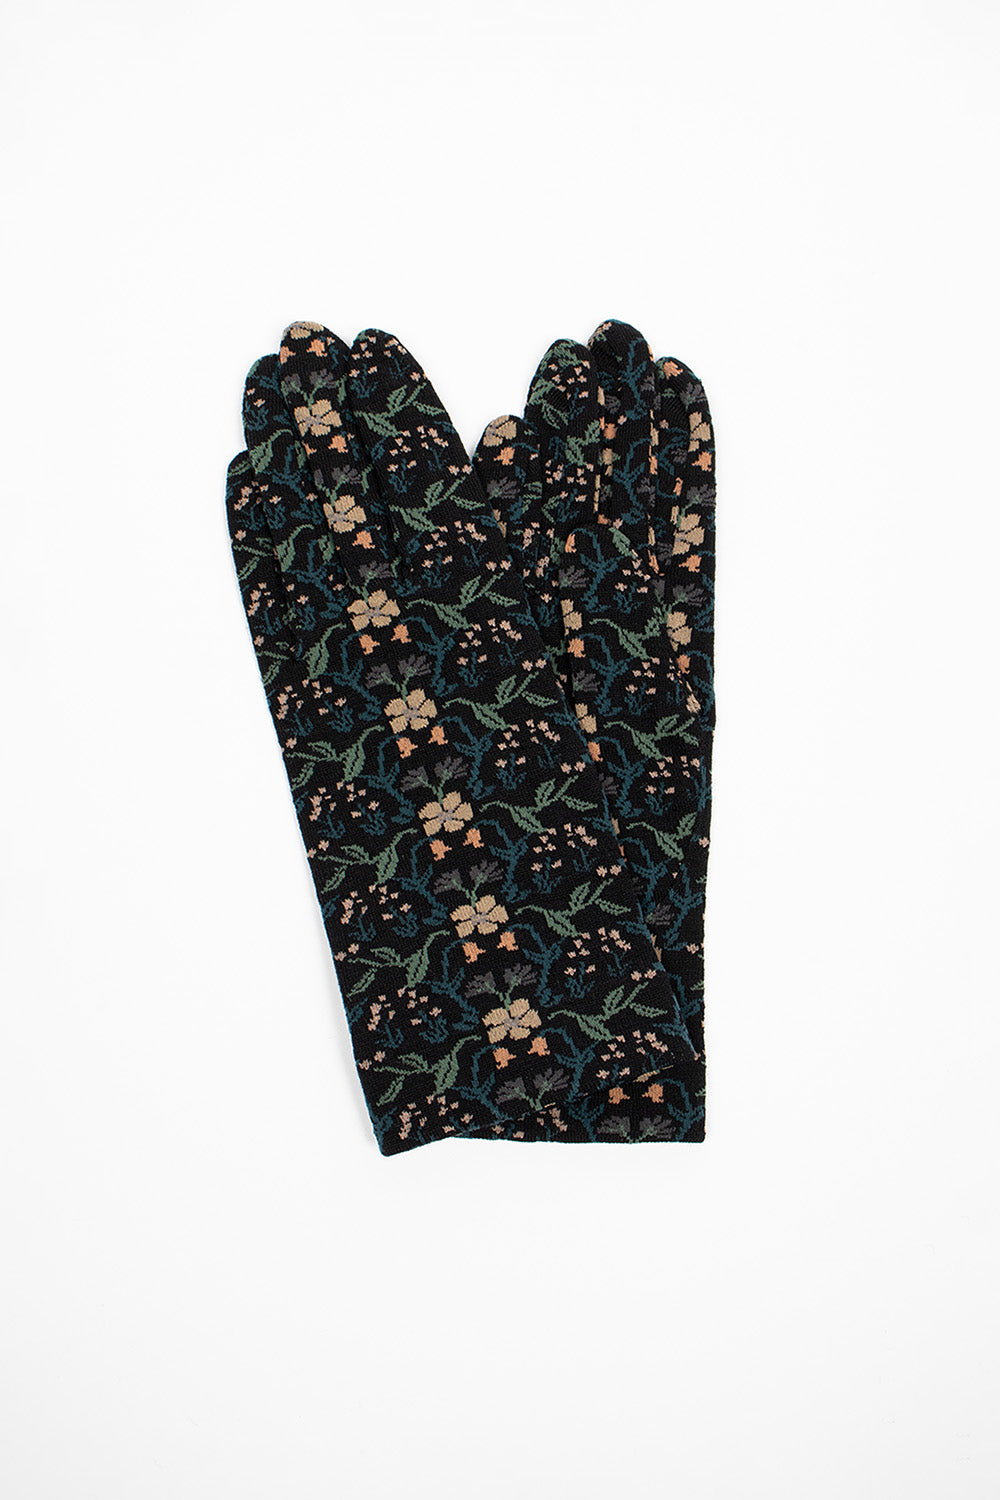 NG1-774 Gloves Black Floral